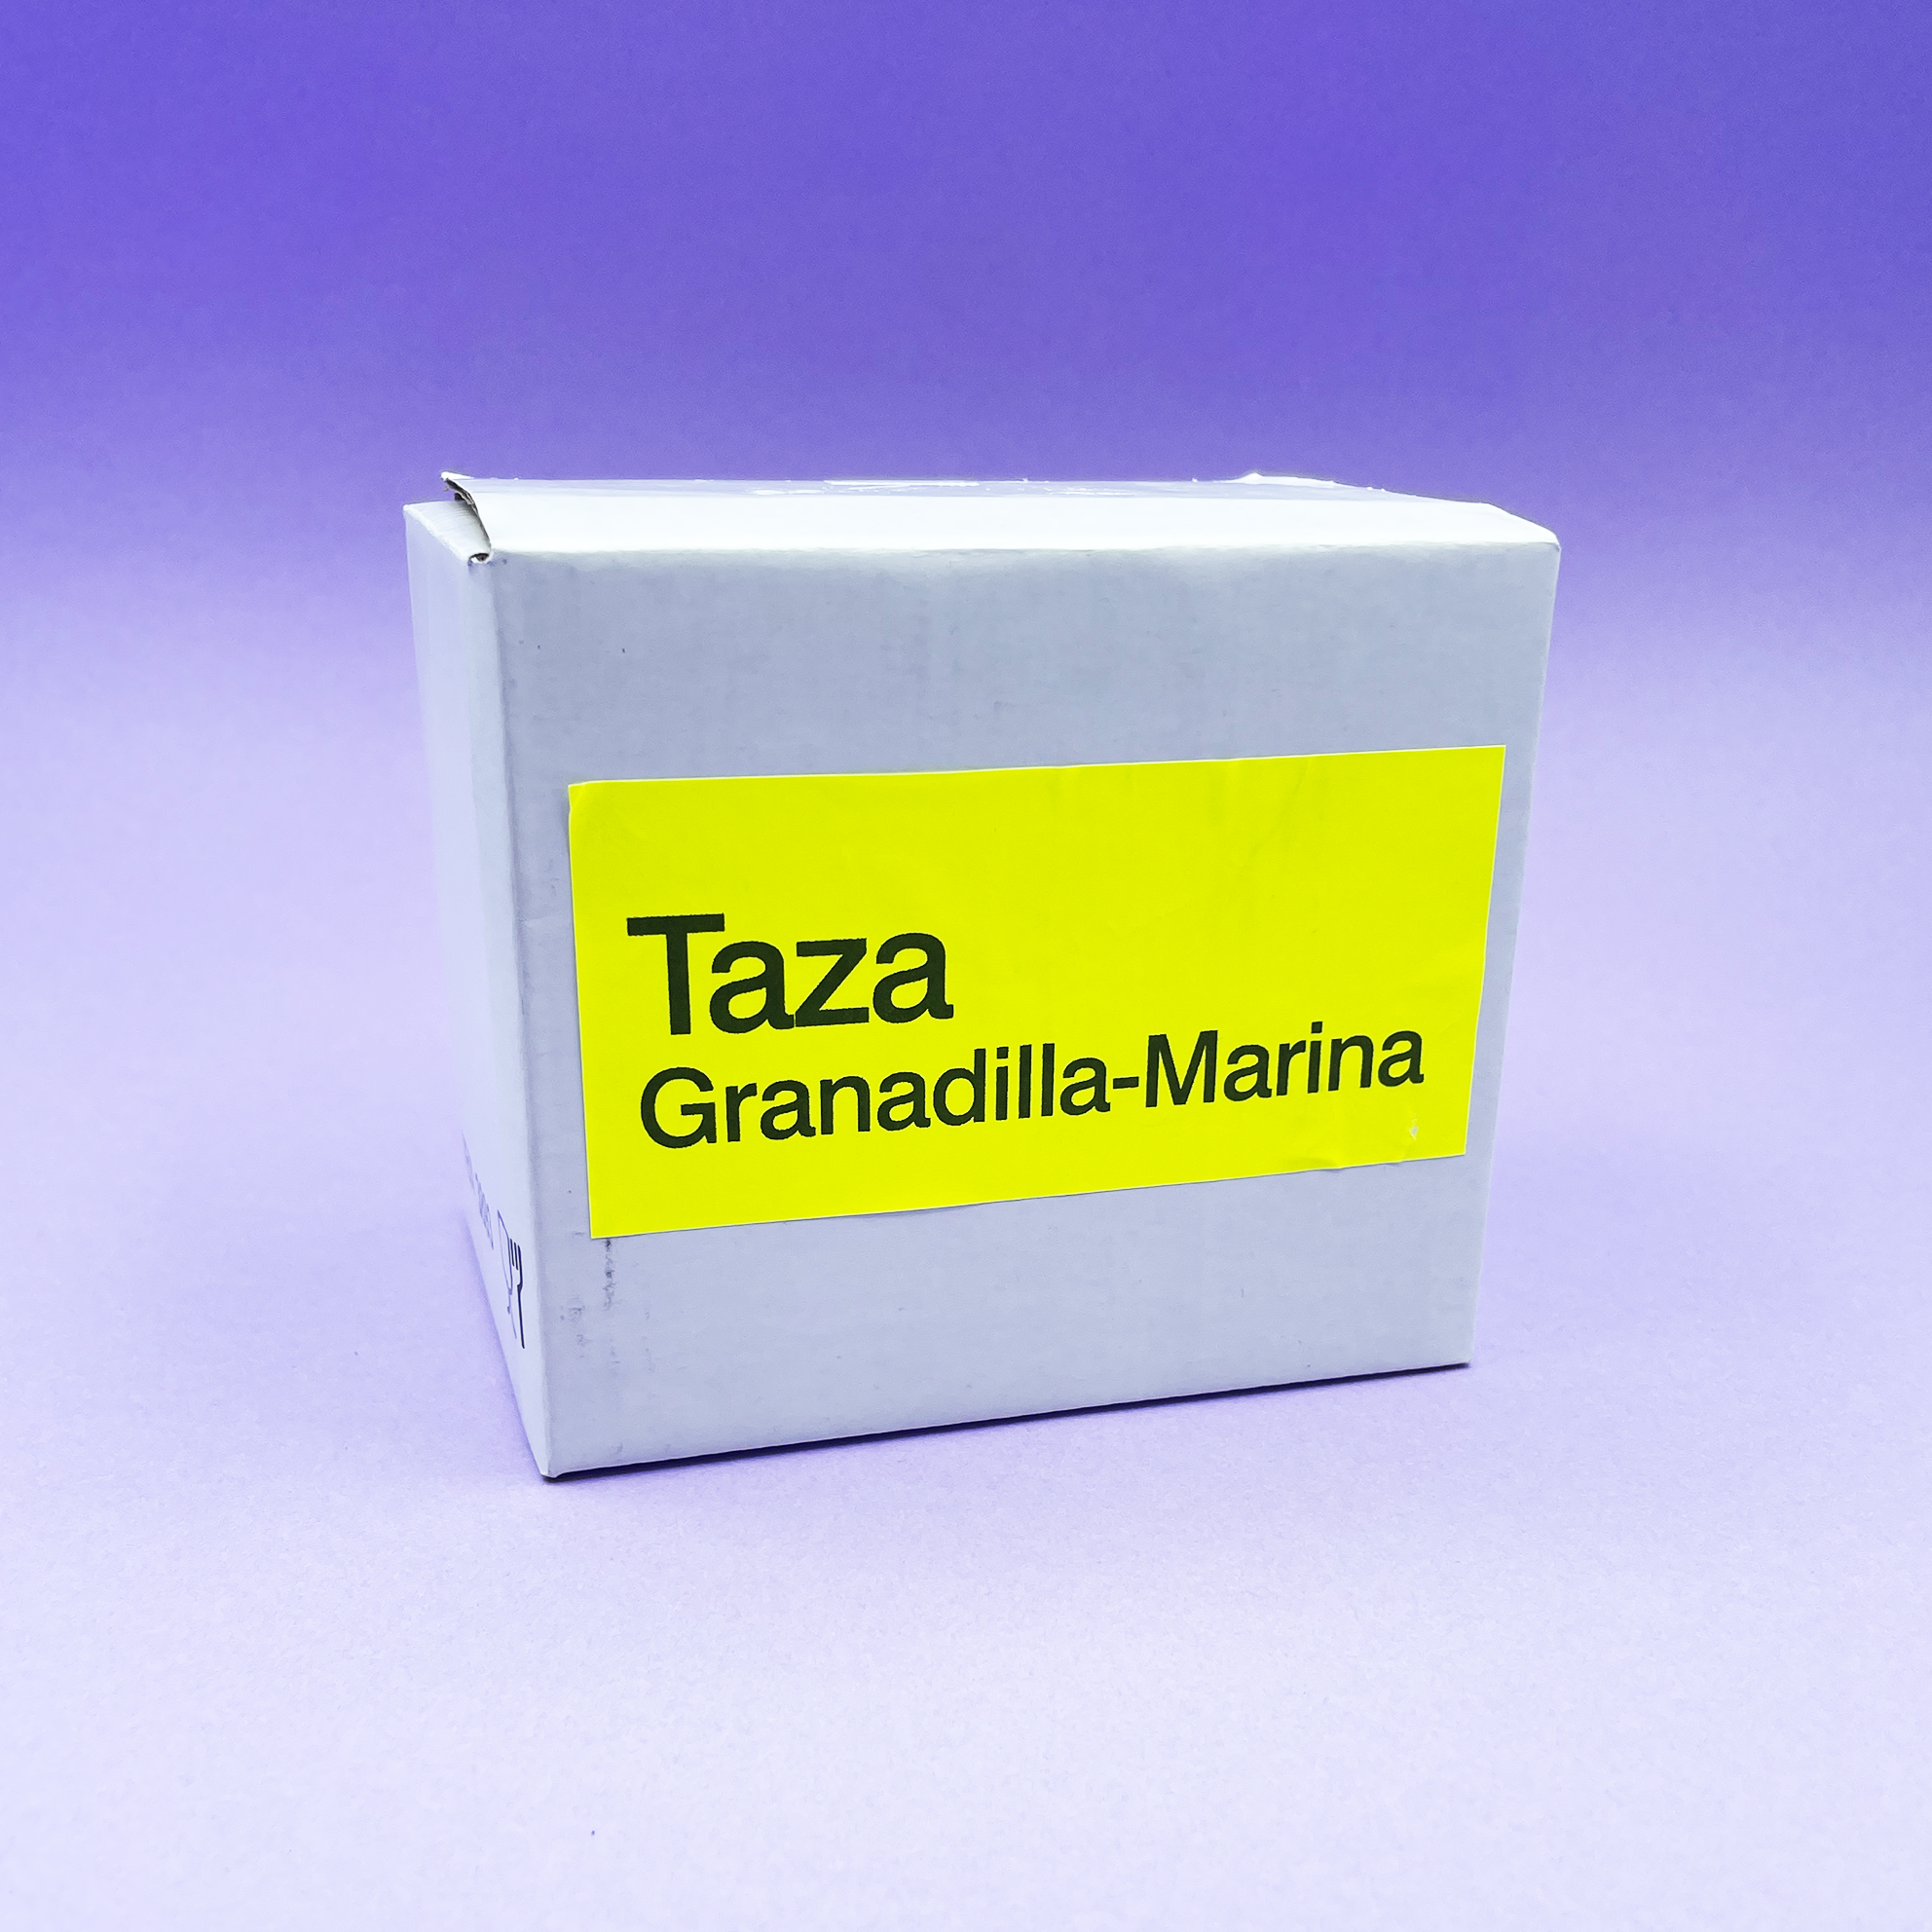 Taza Granadilla-Marina